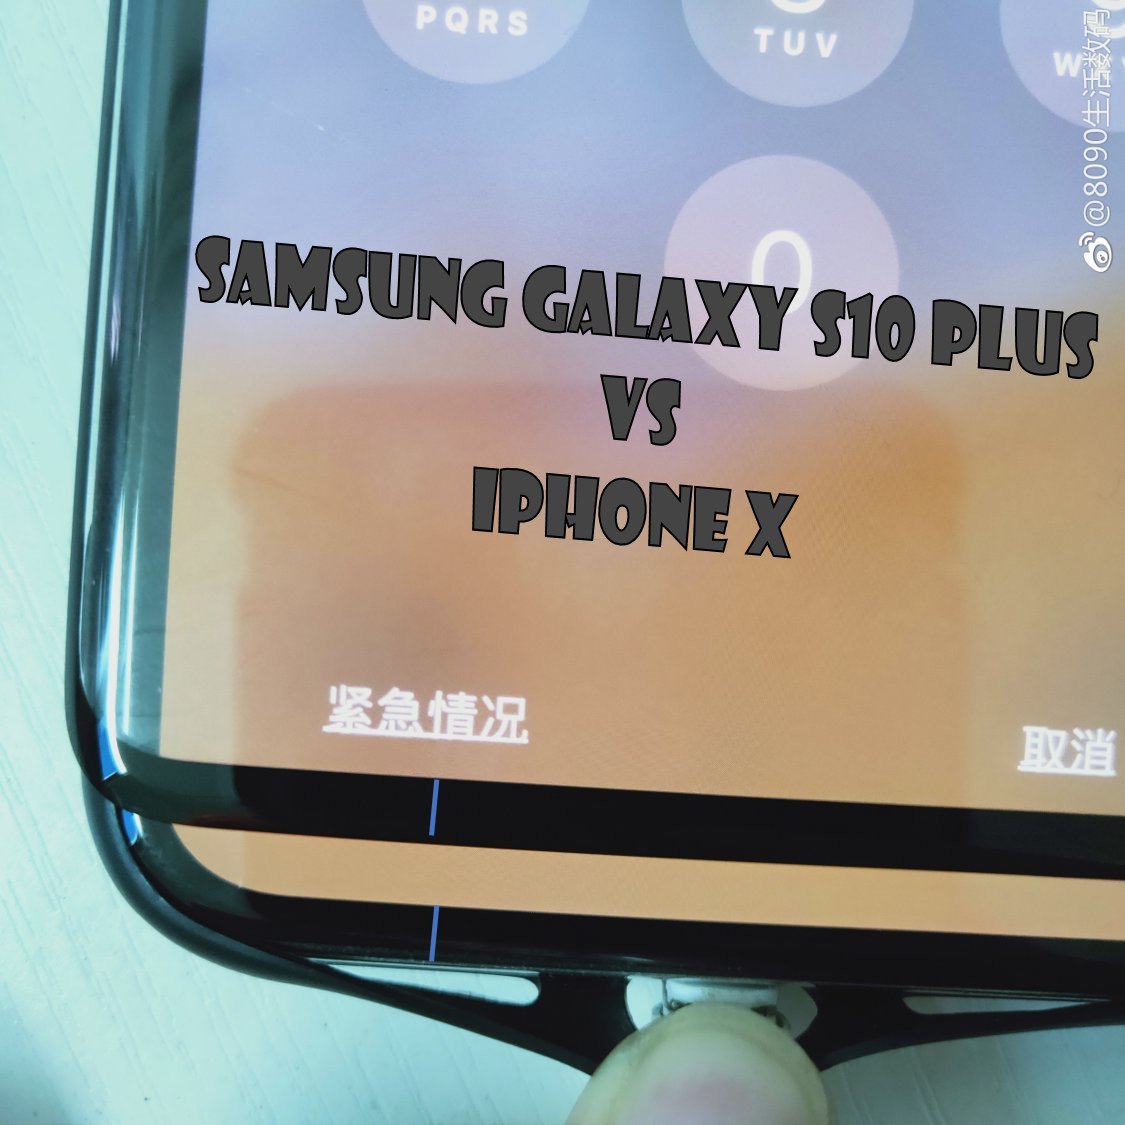 Näytön kannen vuoto vahvistaa, että Samsung Galaxy S10 Plus:lla on pieni, söpö leuka